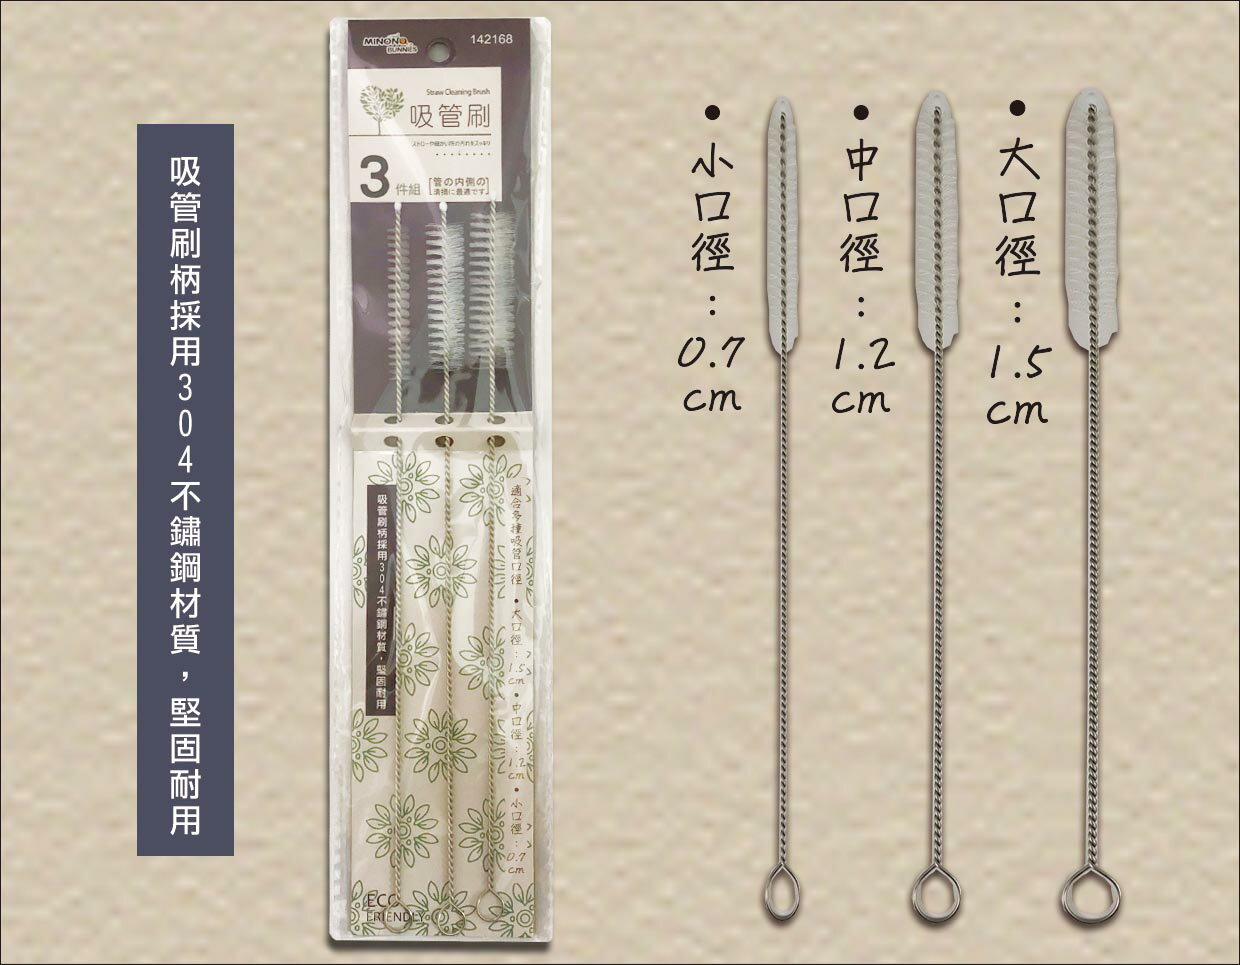 【晨光】米諾諾 不鏽鋼吸管刷 3件組(142168)【現貨】